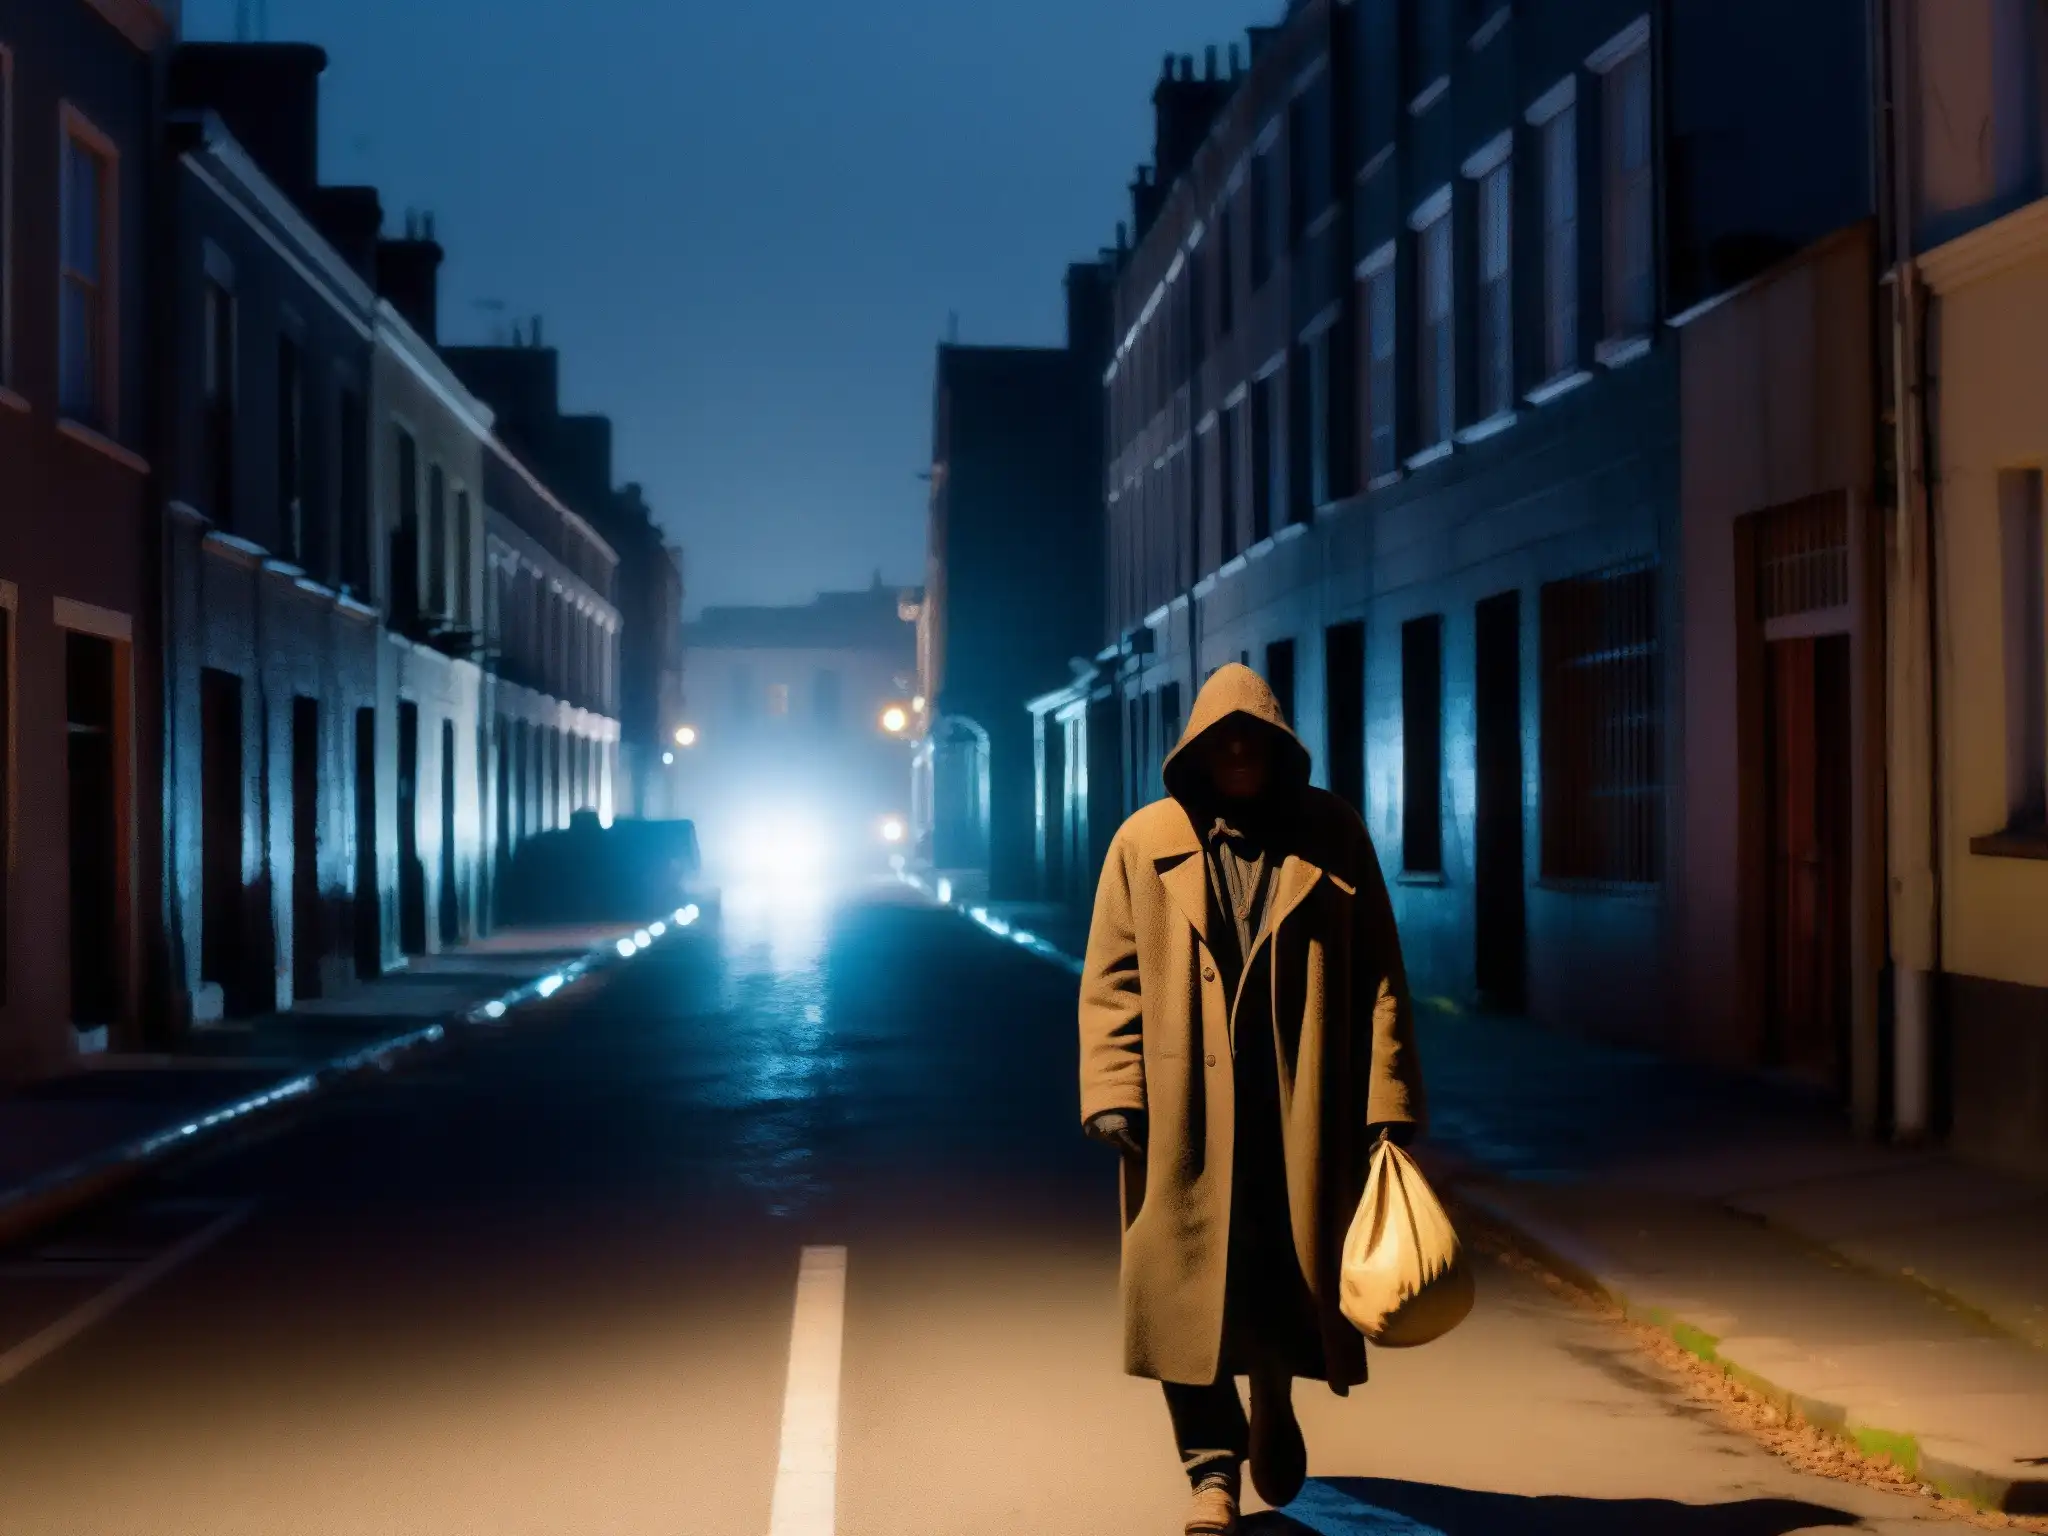 En una tenebrosa calle nocturna, se vislumbra la figura del Hombre del Saco, evocando ansiedad infantil y leyendas urbanas